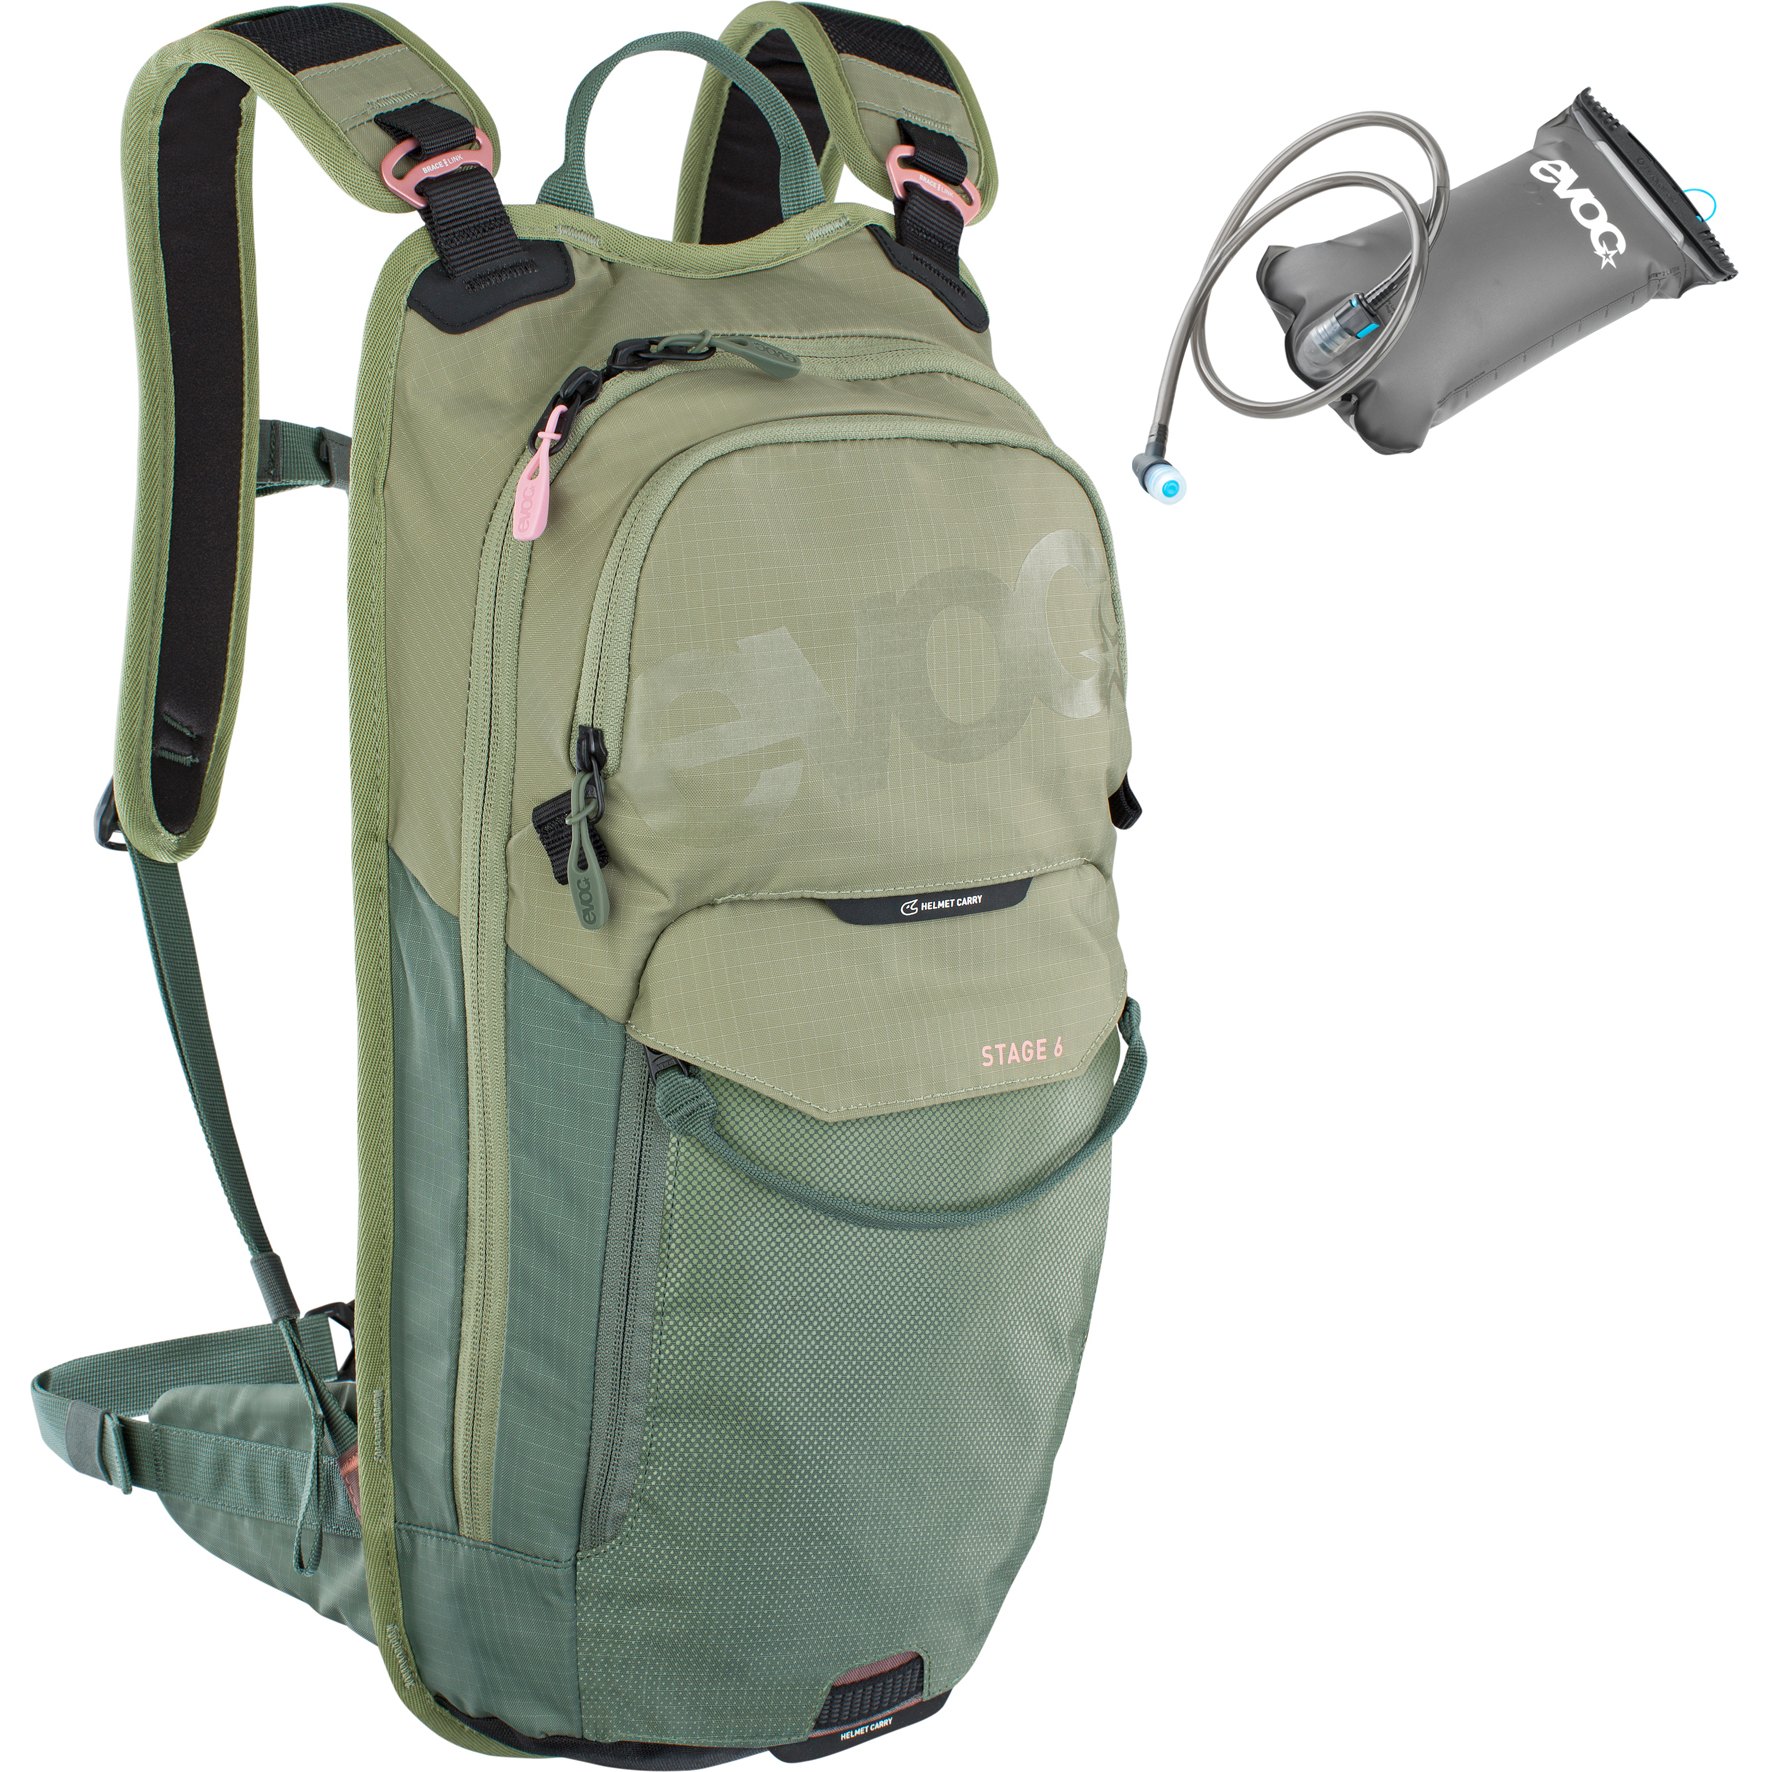 Picture of EVOC Stage Backpack 6 L + Hydration Bladder 2 L - Light Olive / Olive